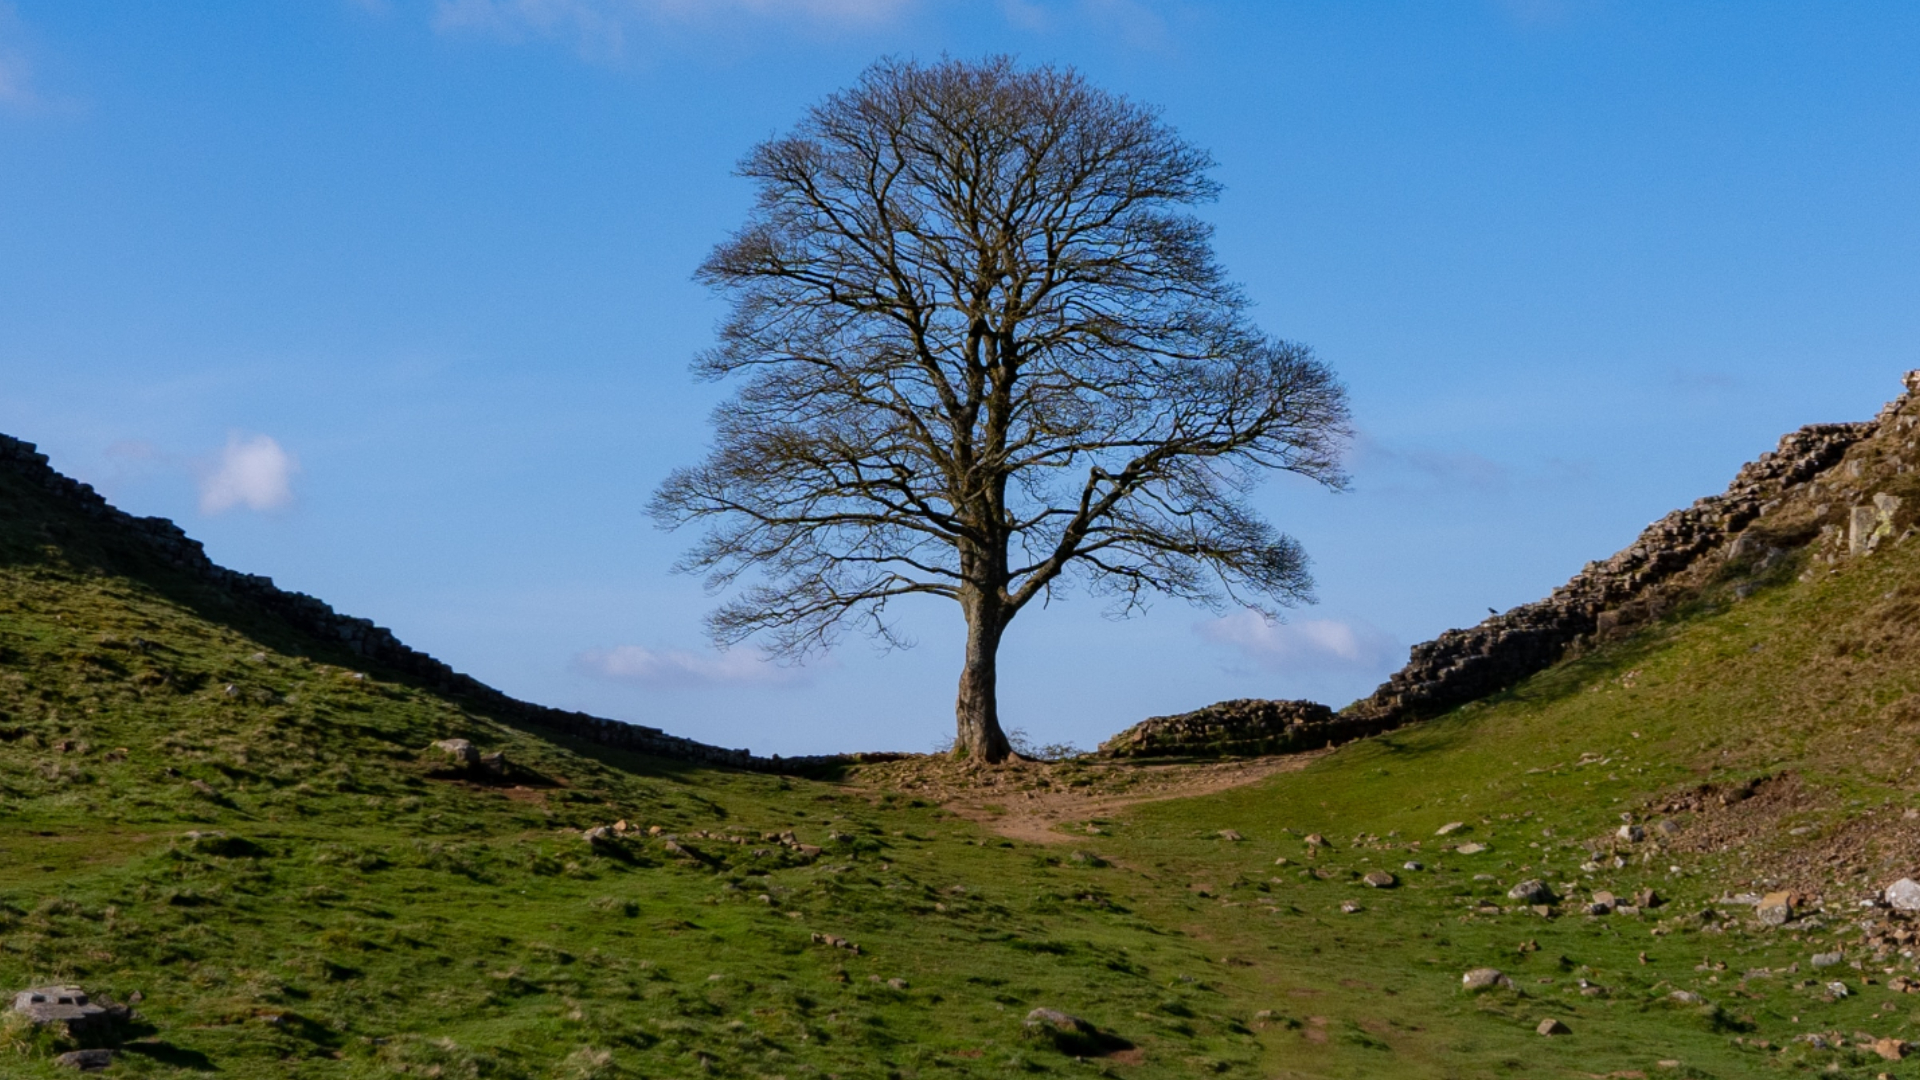 Jovem de 16 anos é detido após árvore de 200 anos “mais famosa do Reino Unido” ser derrubada